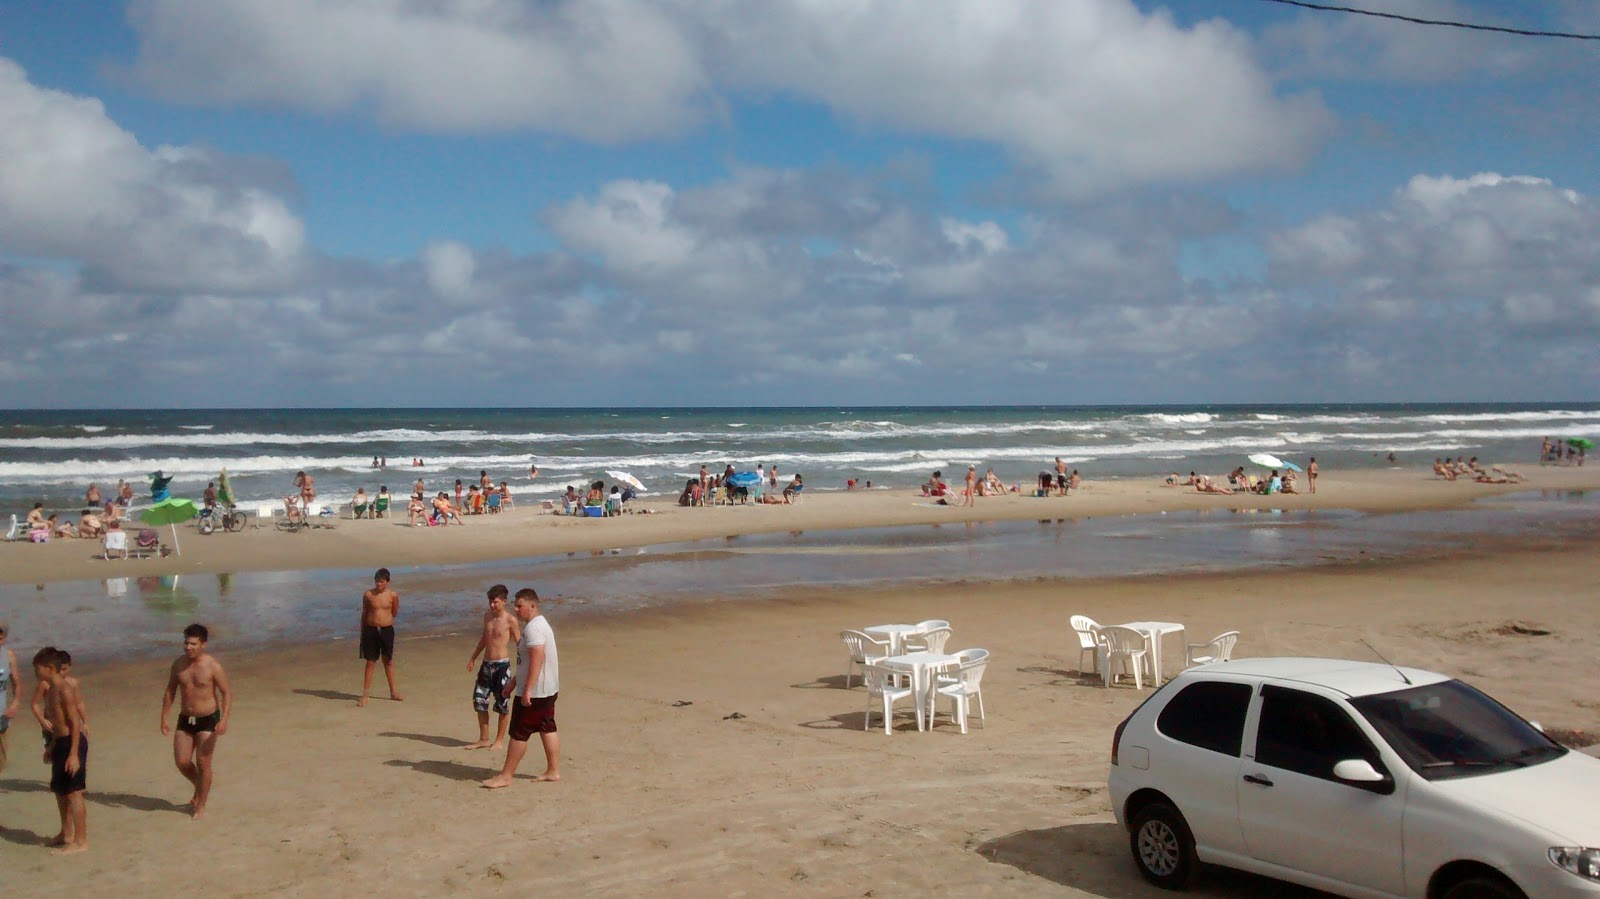 Foto af Praia de Cidreira - populært sted blandt afslapningskendere